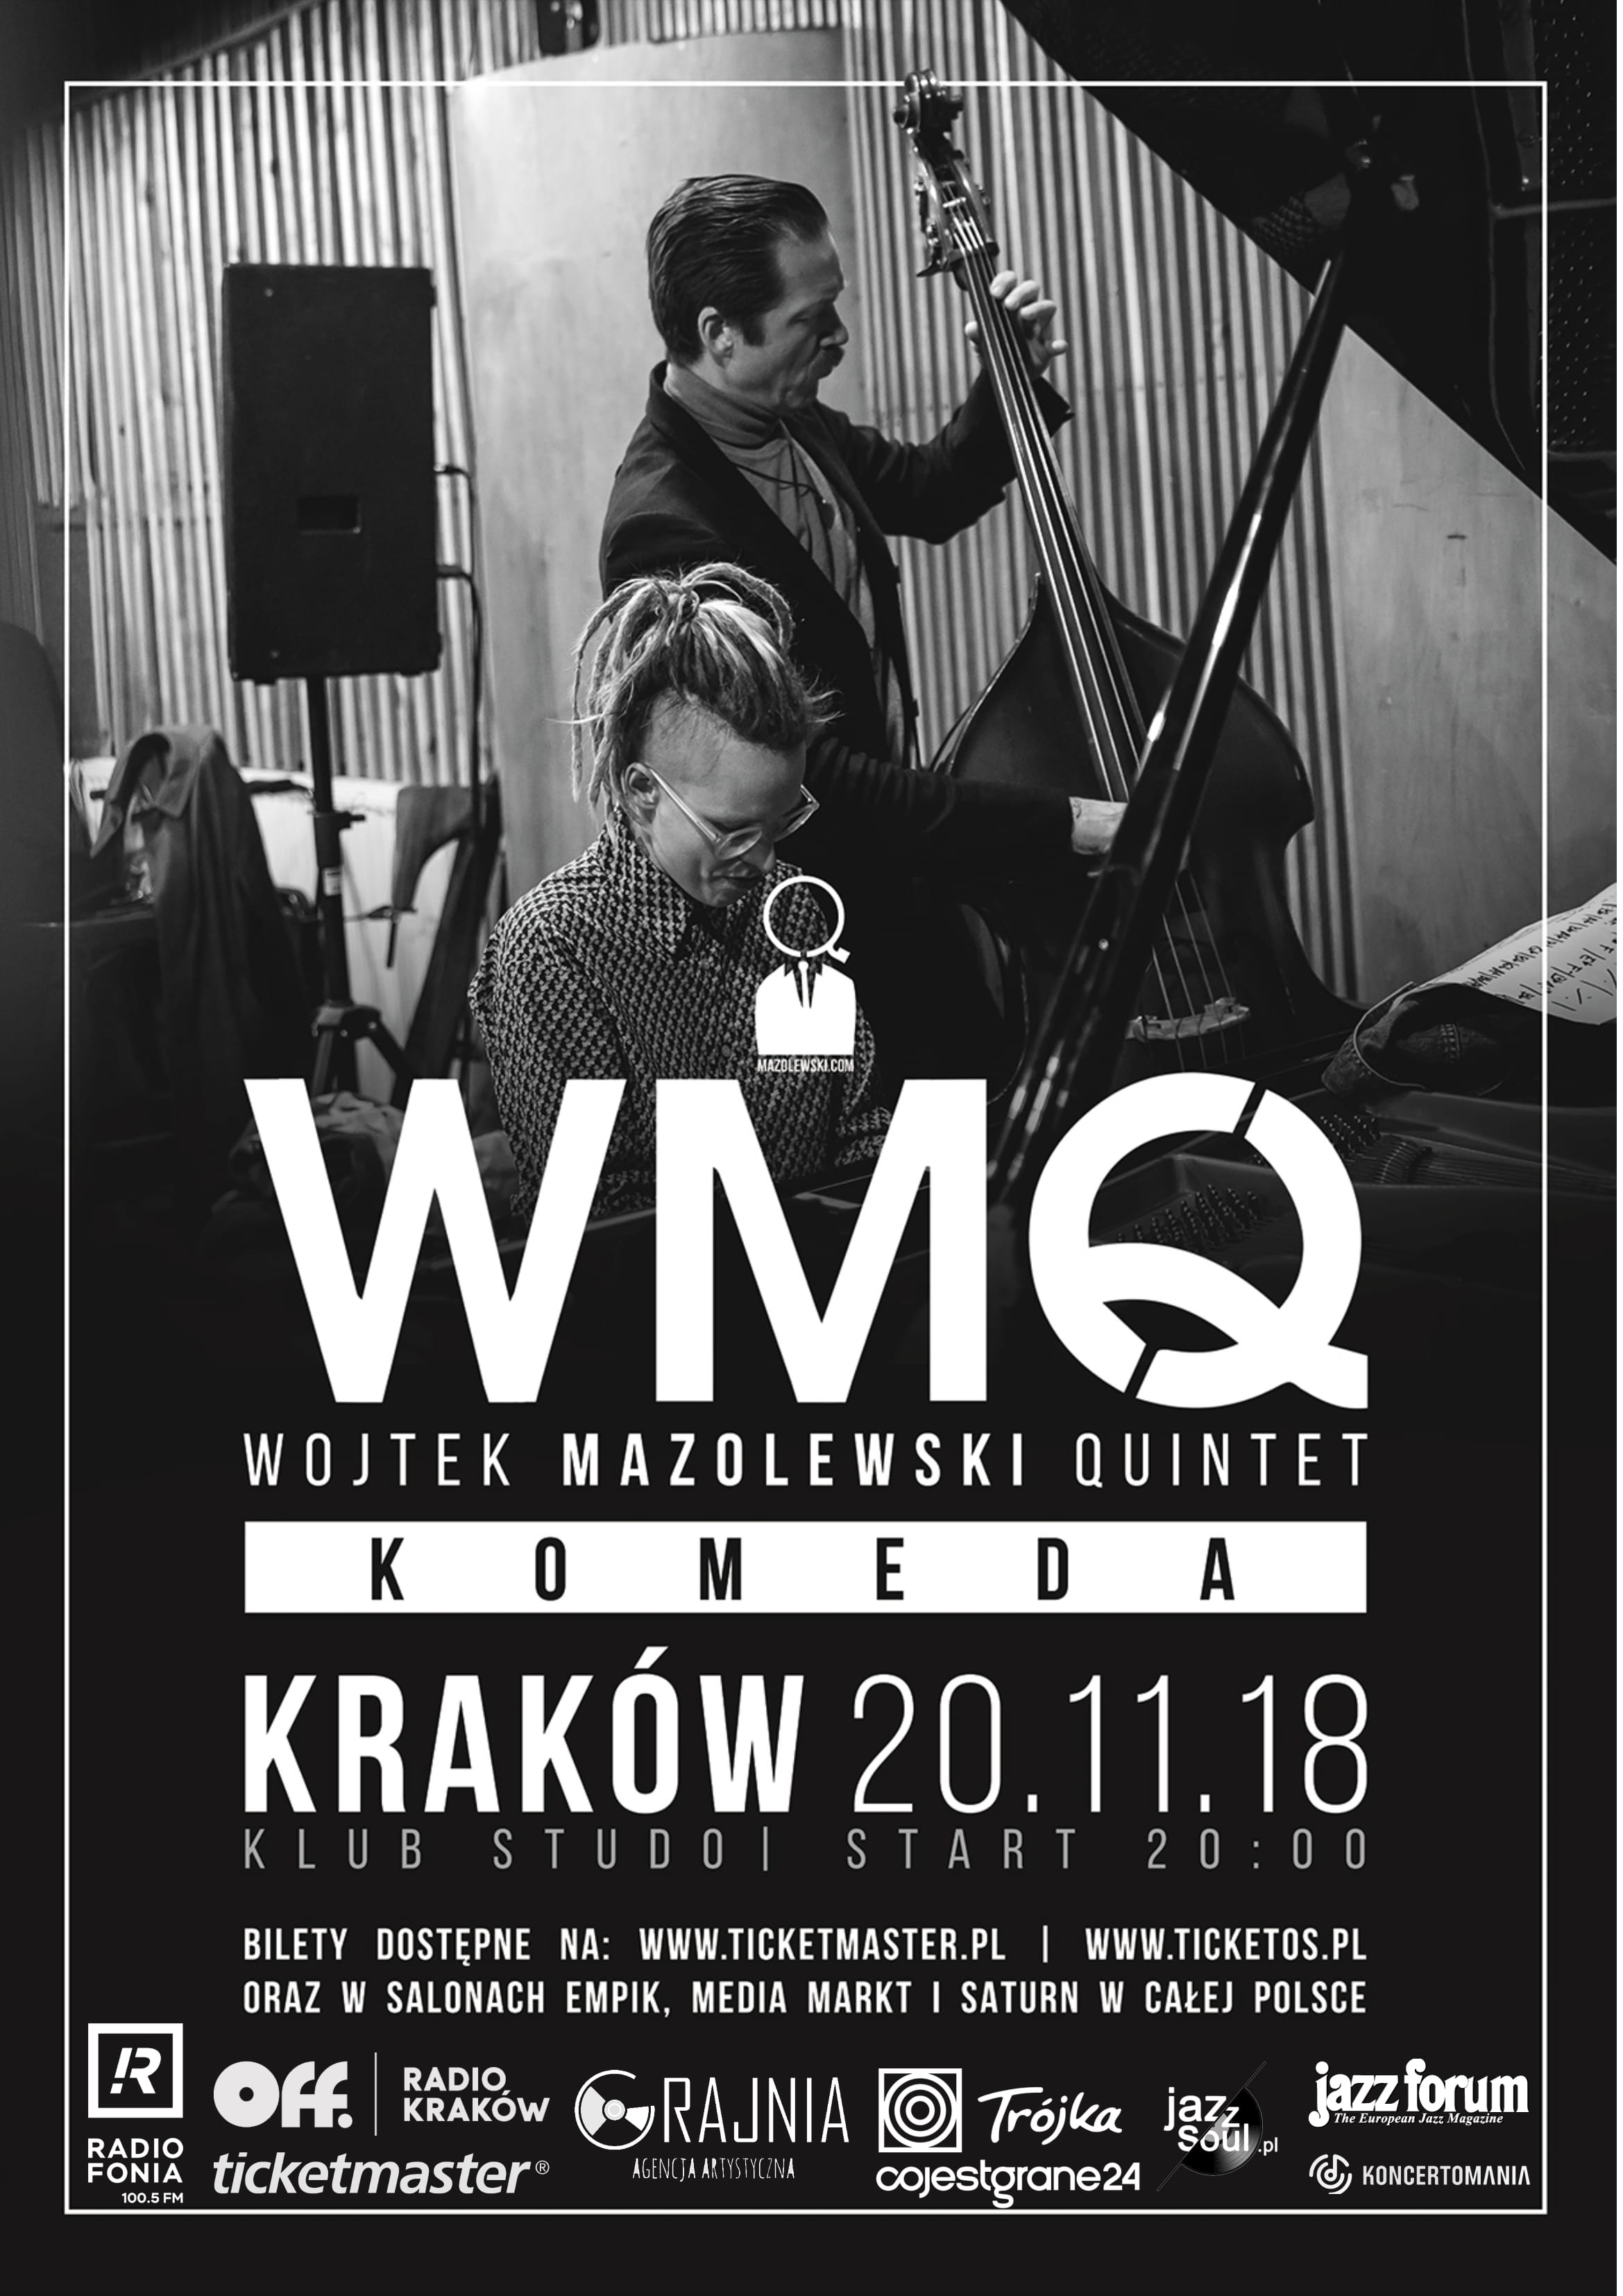 Wojtek Mazolewski Quintet (źródło: materiały prasowe organizatora)